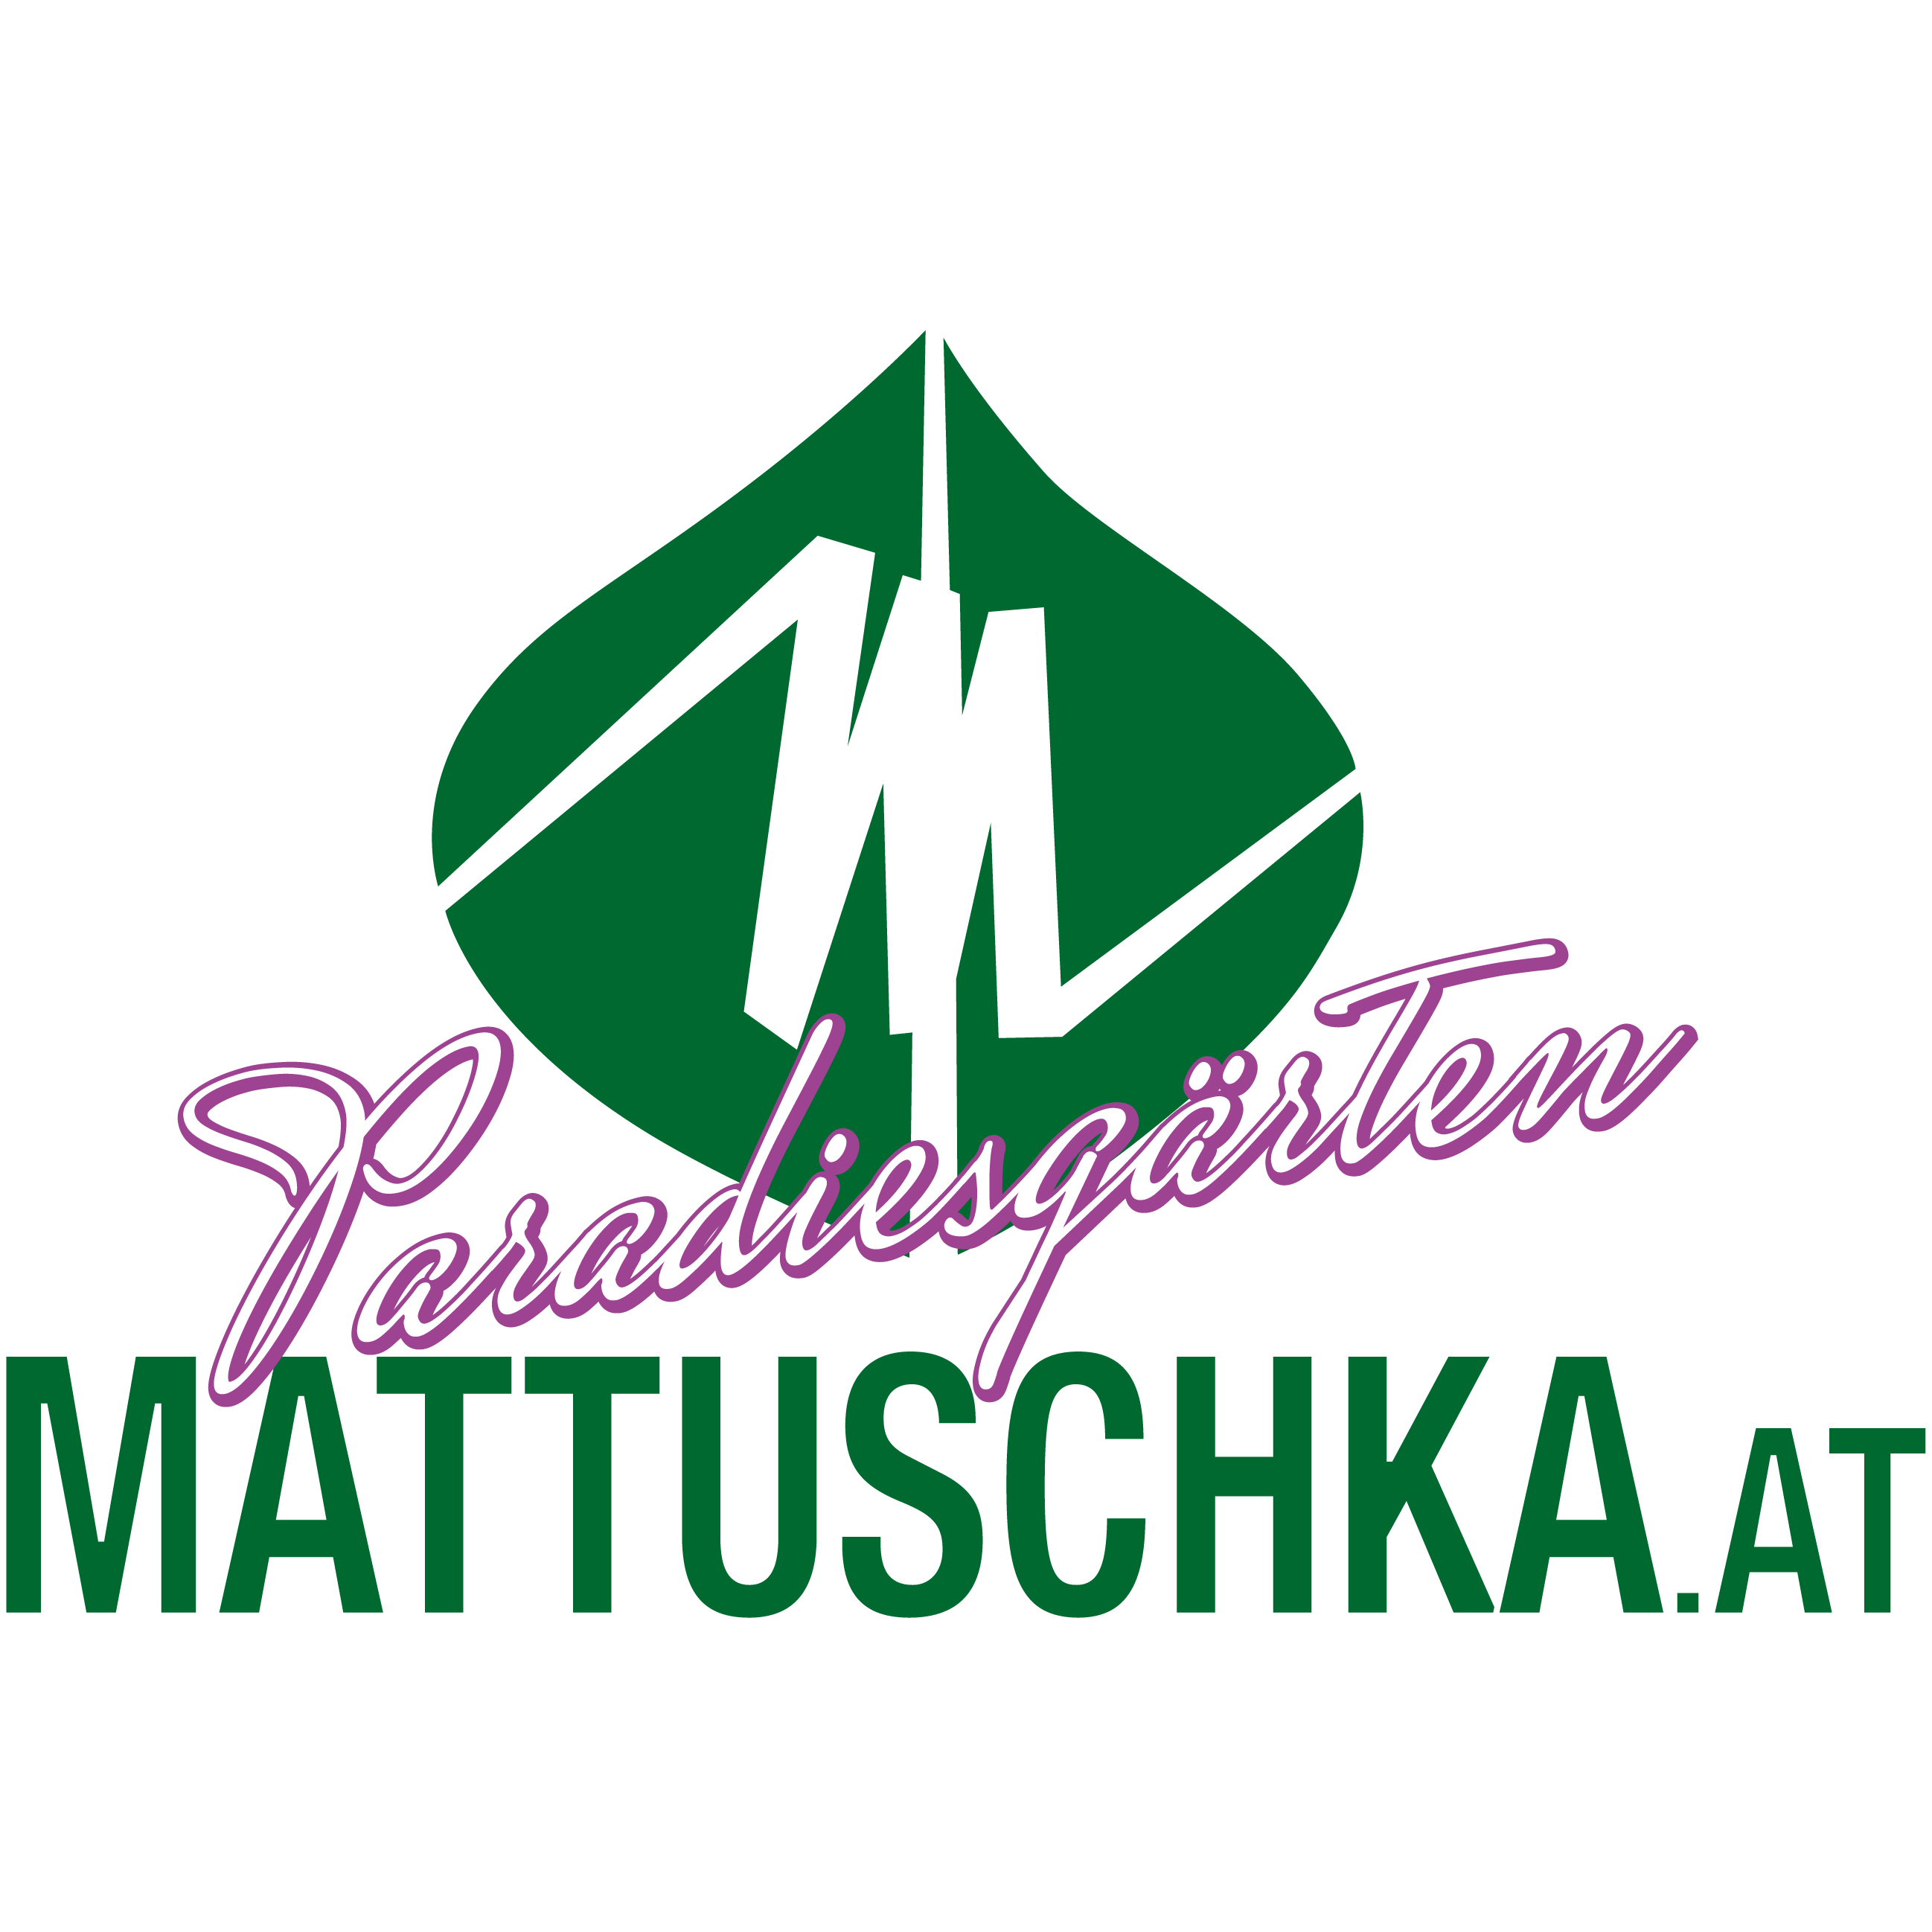 Paradiesgärten Mattuschka - Gartengestaltung - Pflege Abo - Pflanzenverkauf Logo